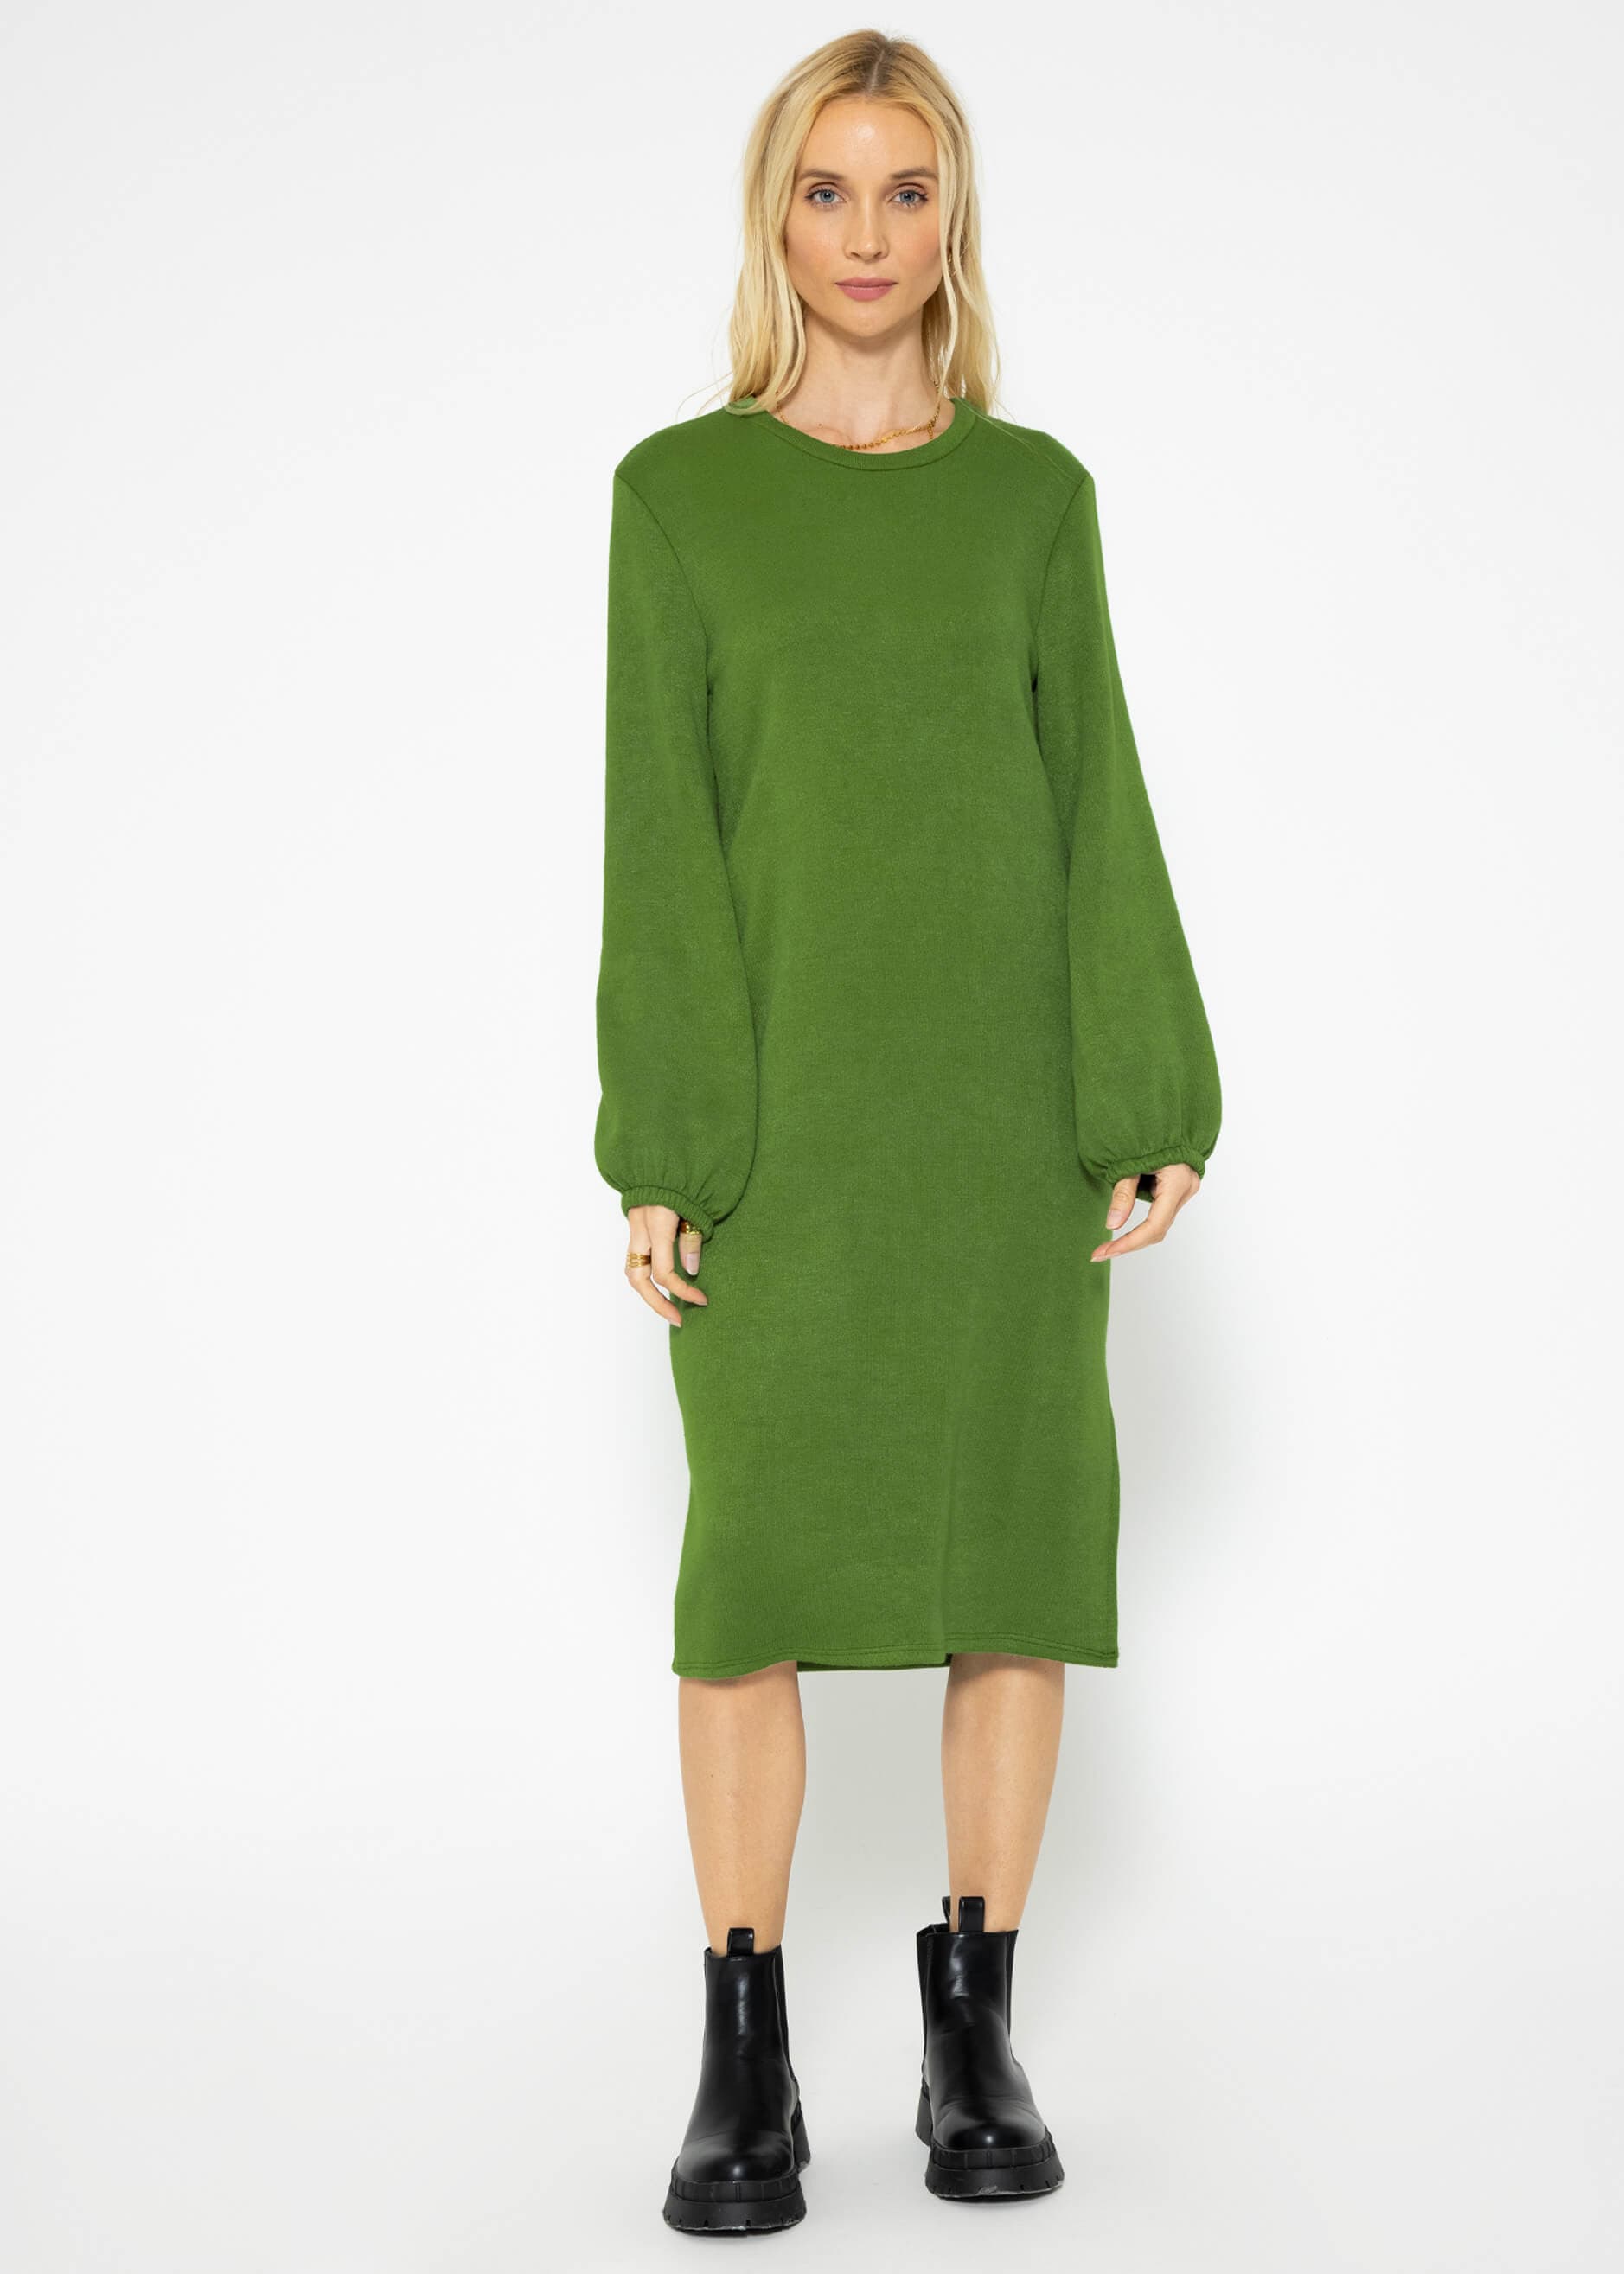 Kleider | Jerseykleid - Midilänge grün soft | Super | SASSYCLASSY Bekleidung in